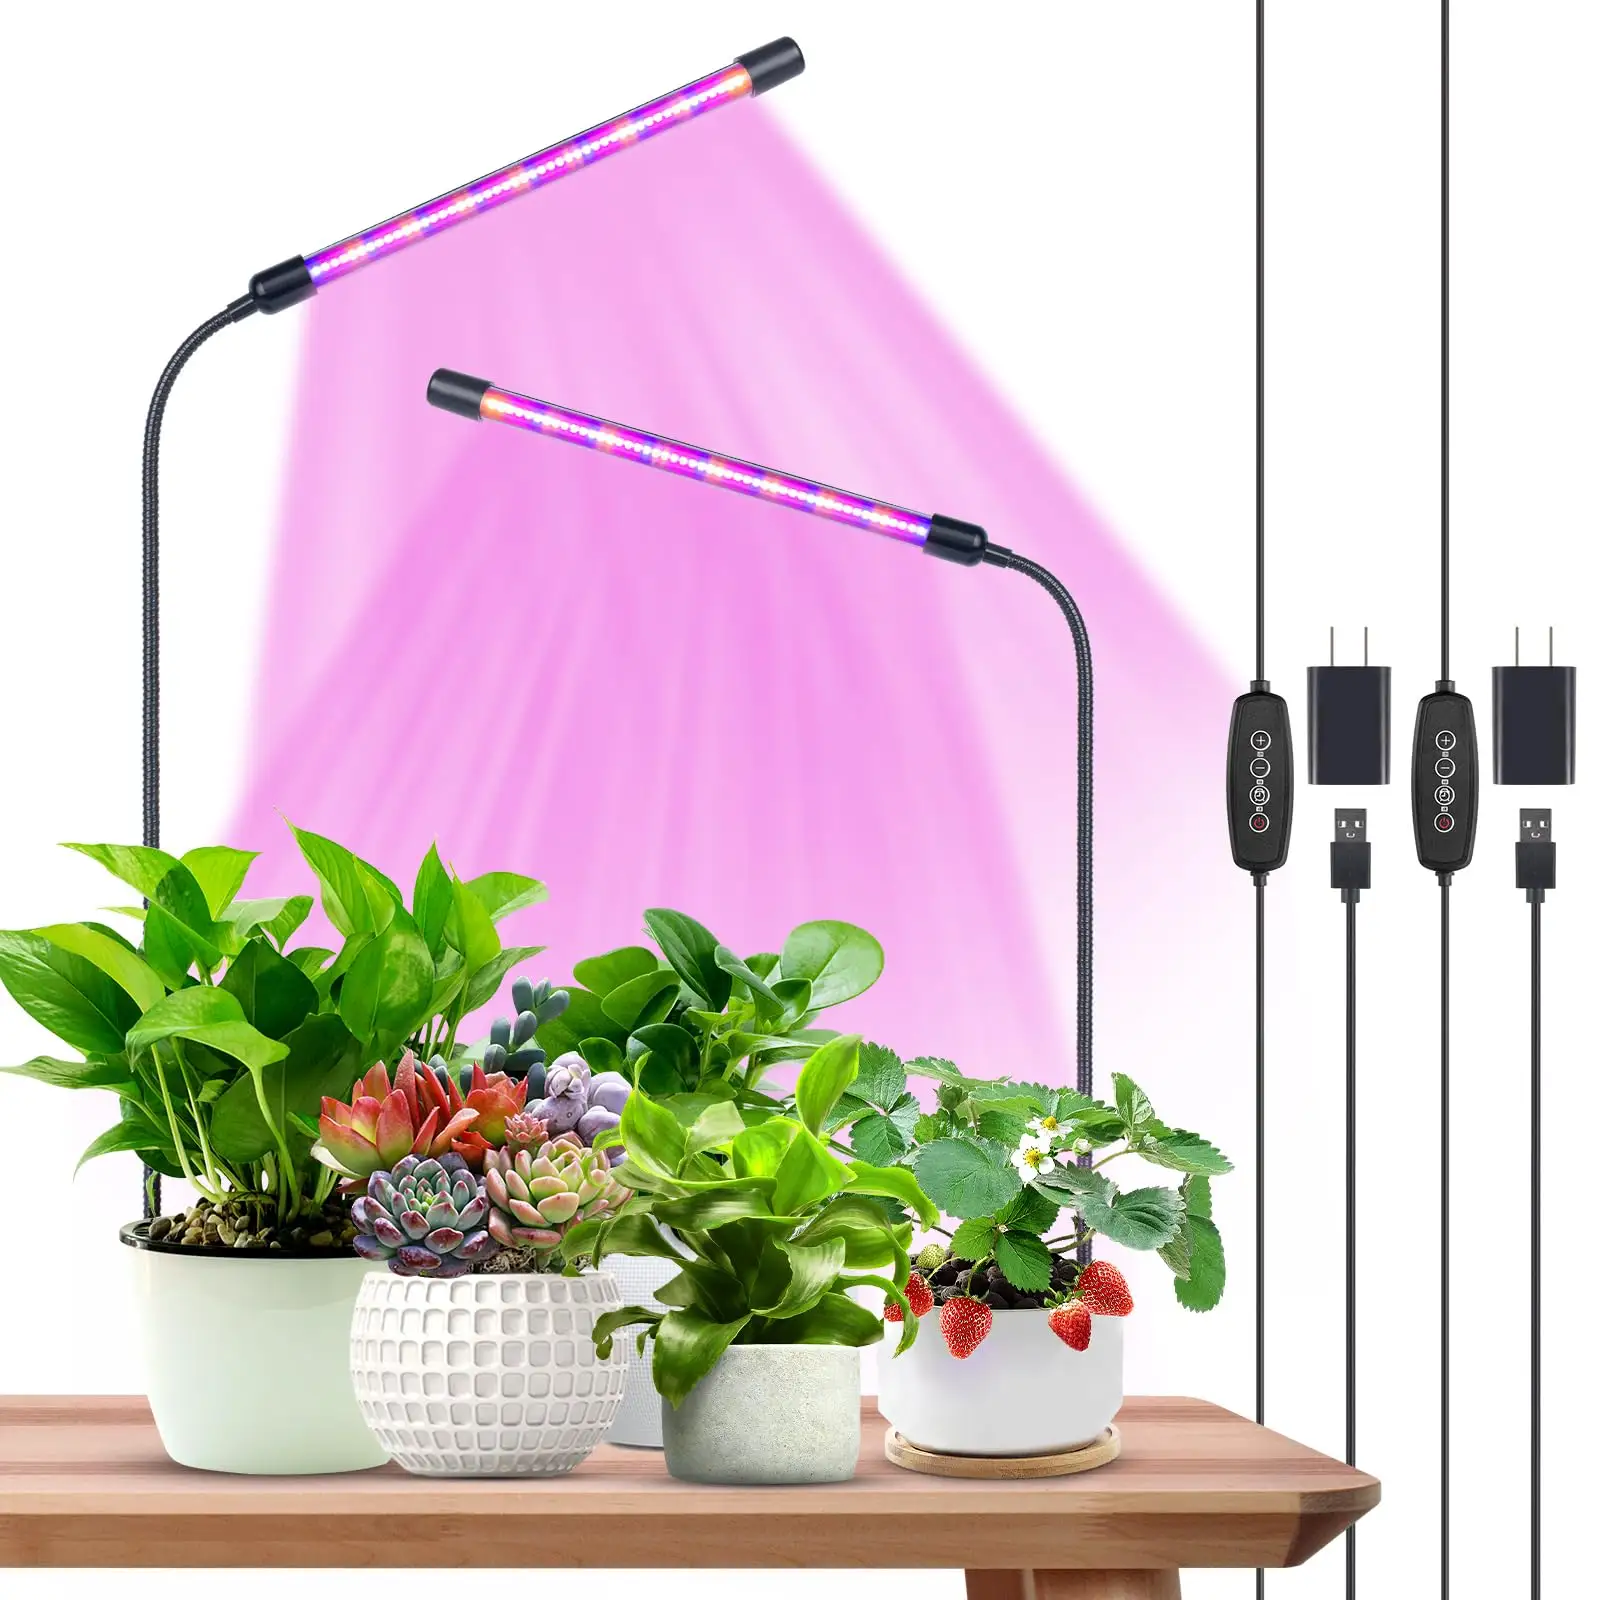 Lampu tanaman tumbuh kepala ganda 40 LED bola lampu untuk meja dalam ruangan pertumbuhan tanaman dan benih mulai cahaya matahari lampu tumbuh dengan klip